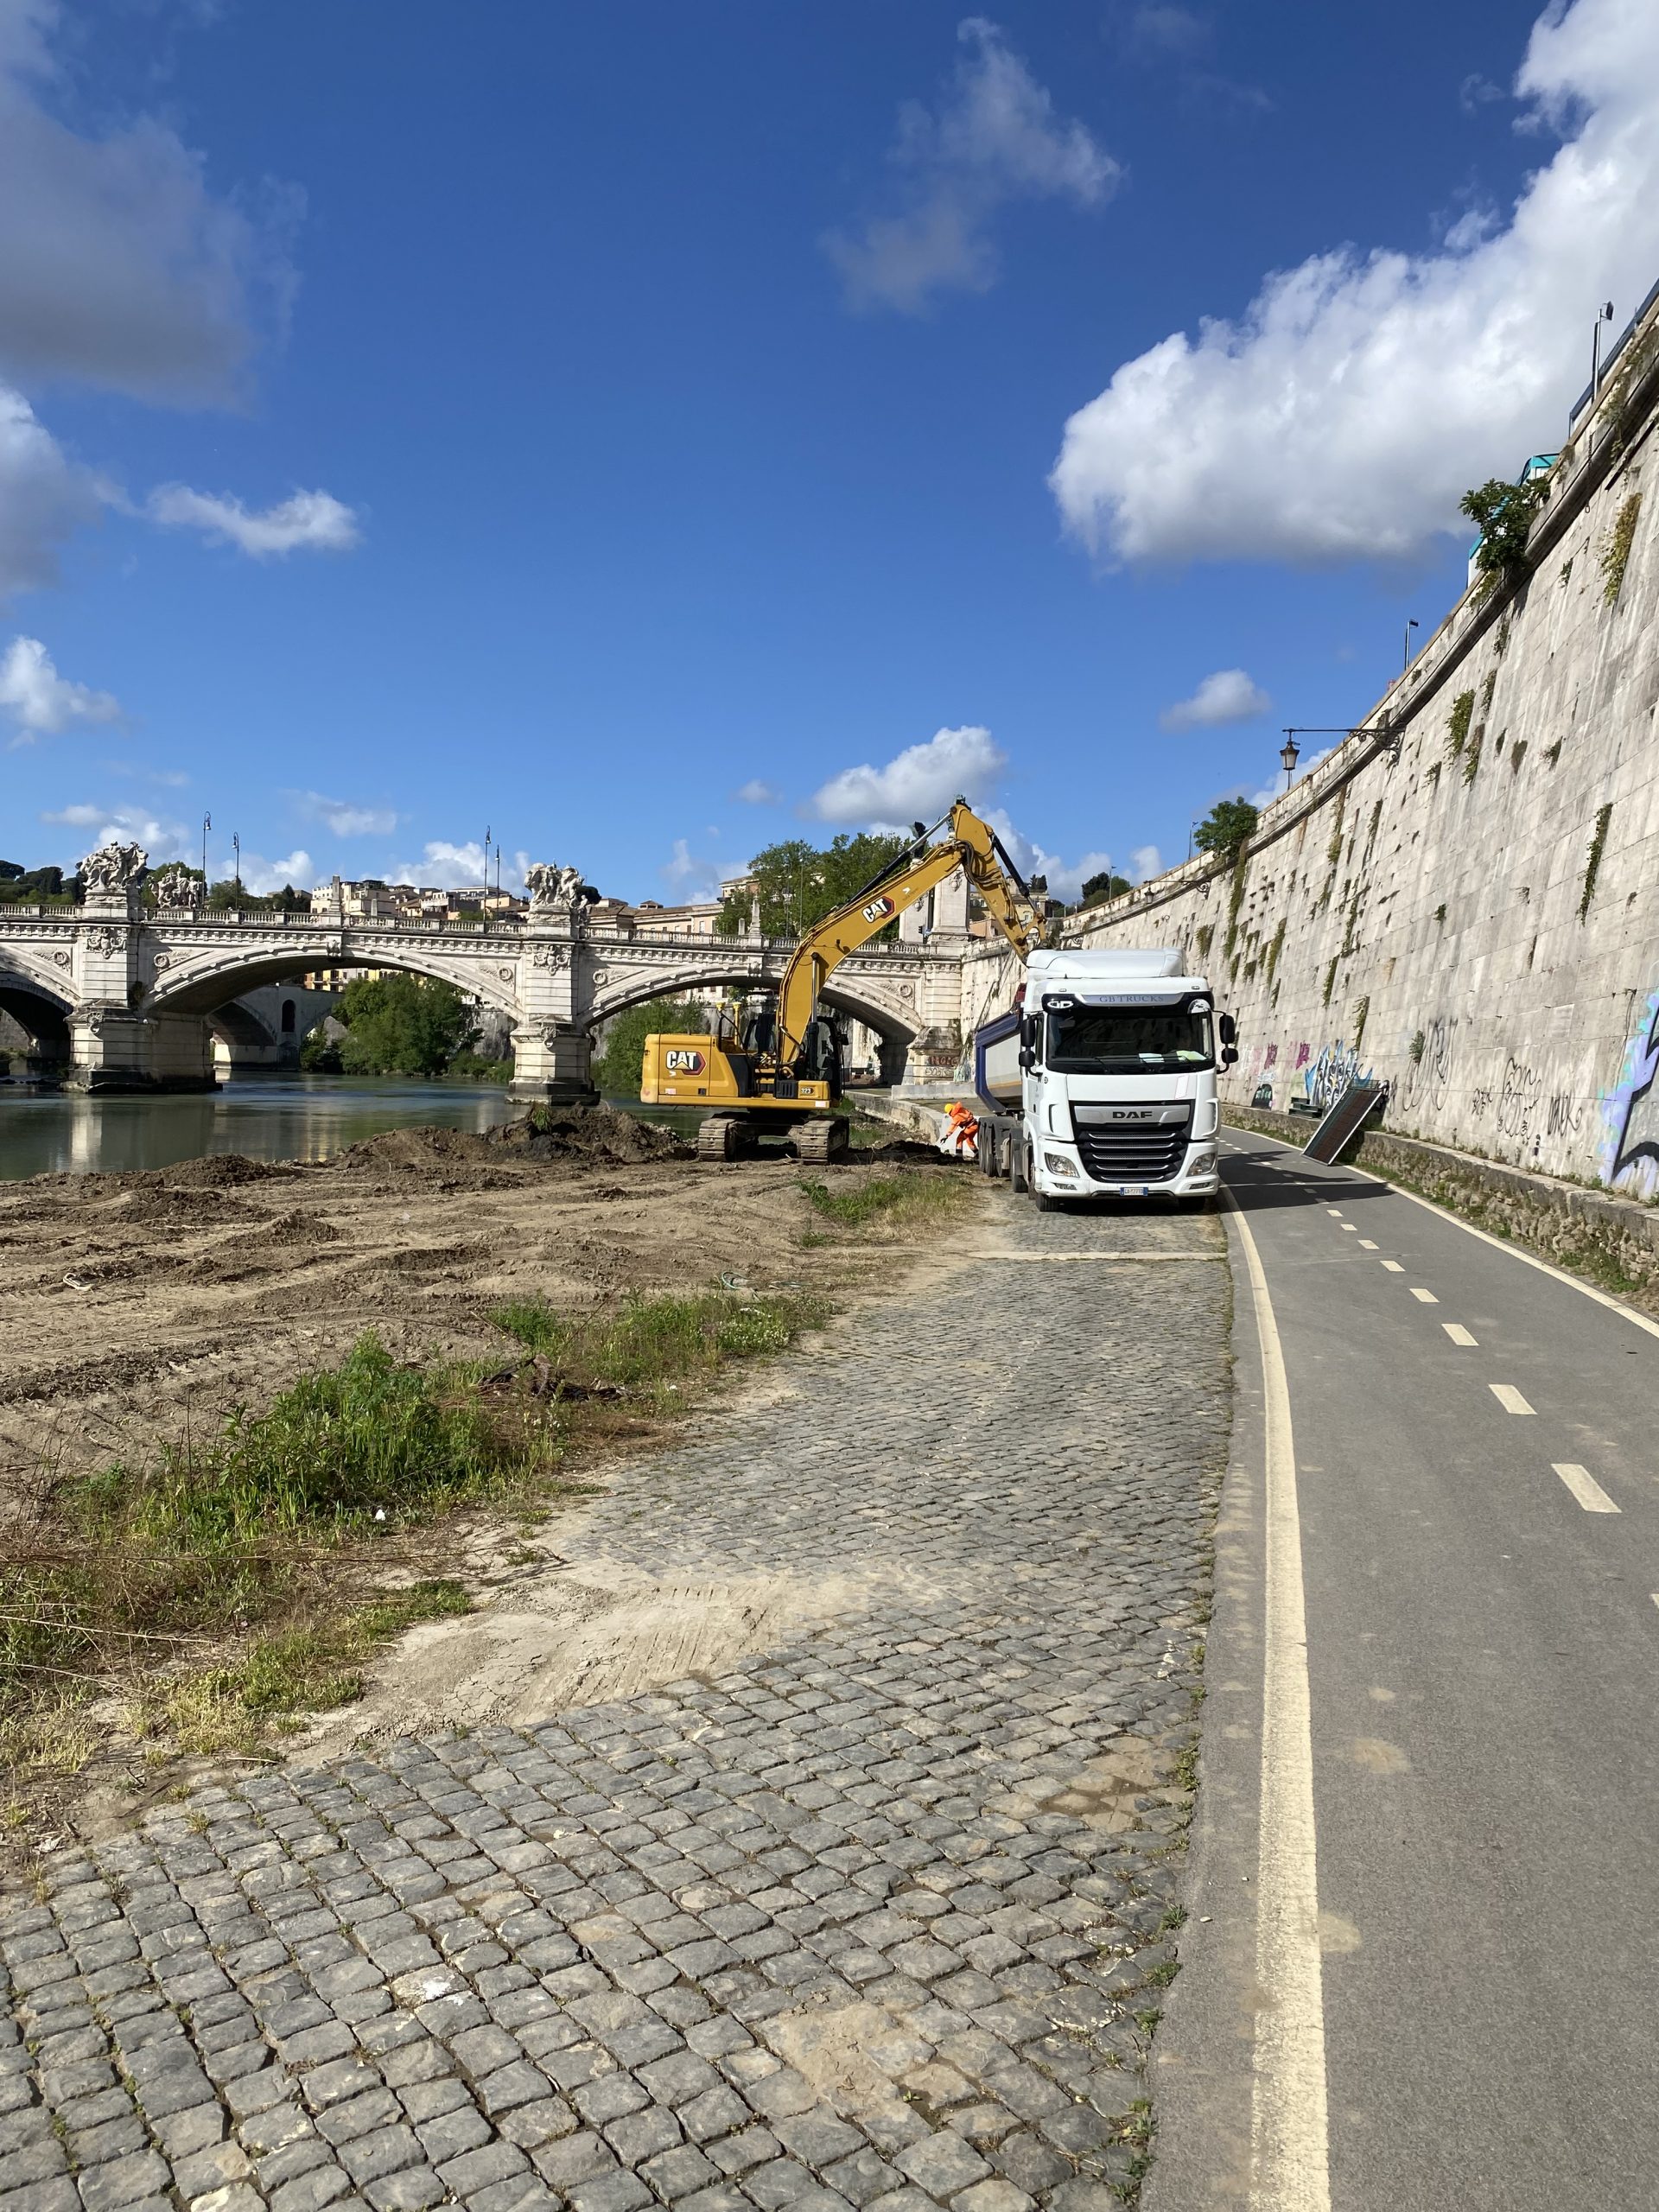 Construction site update: ‘Sistemazione Vie D’acqua’ project in Rome